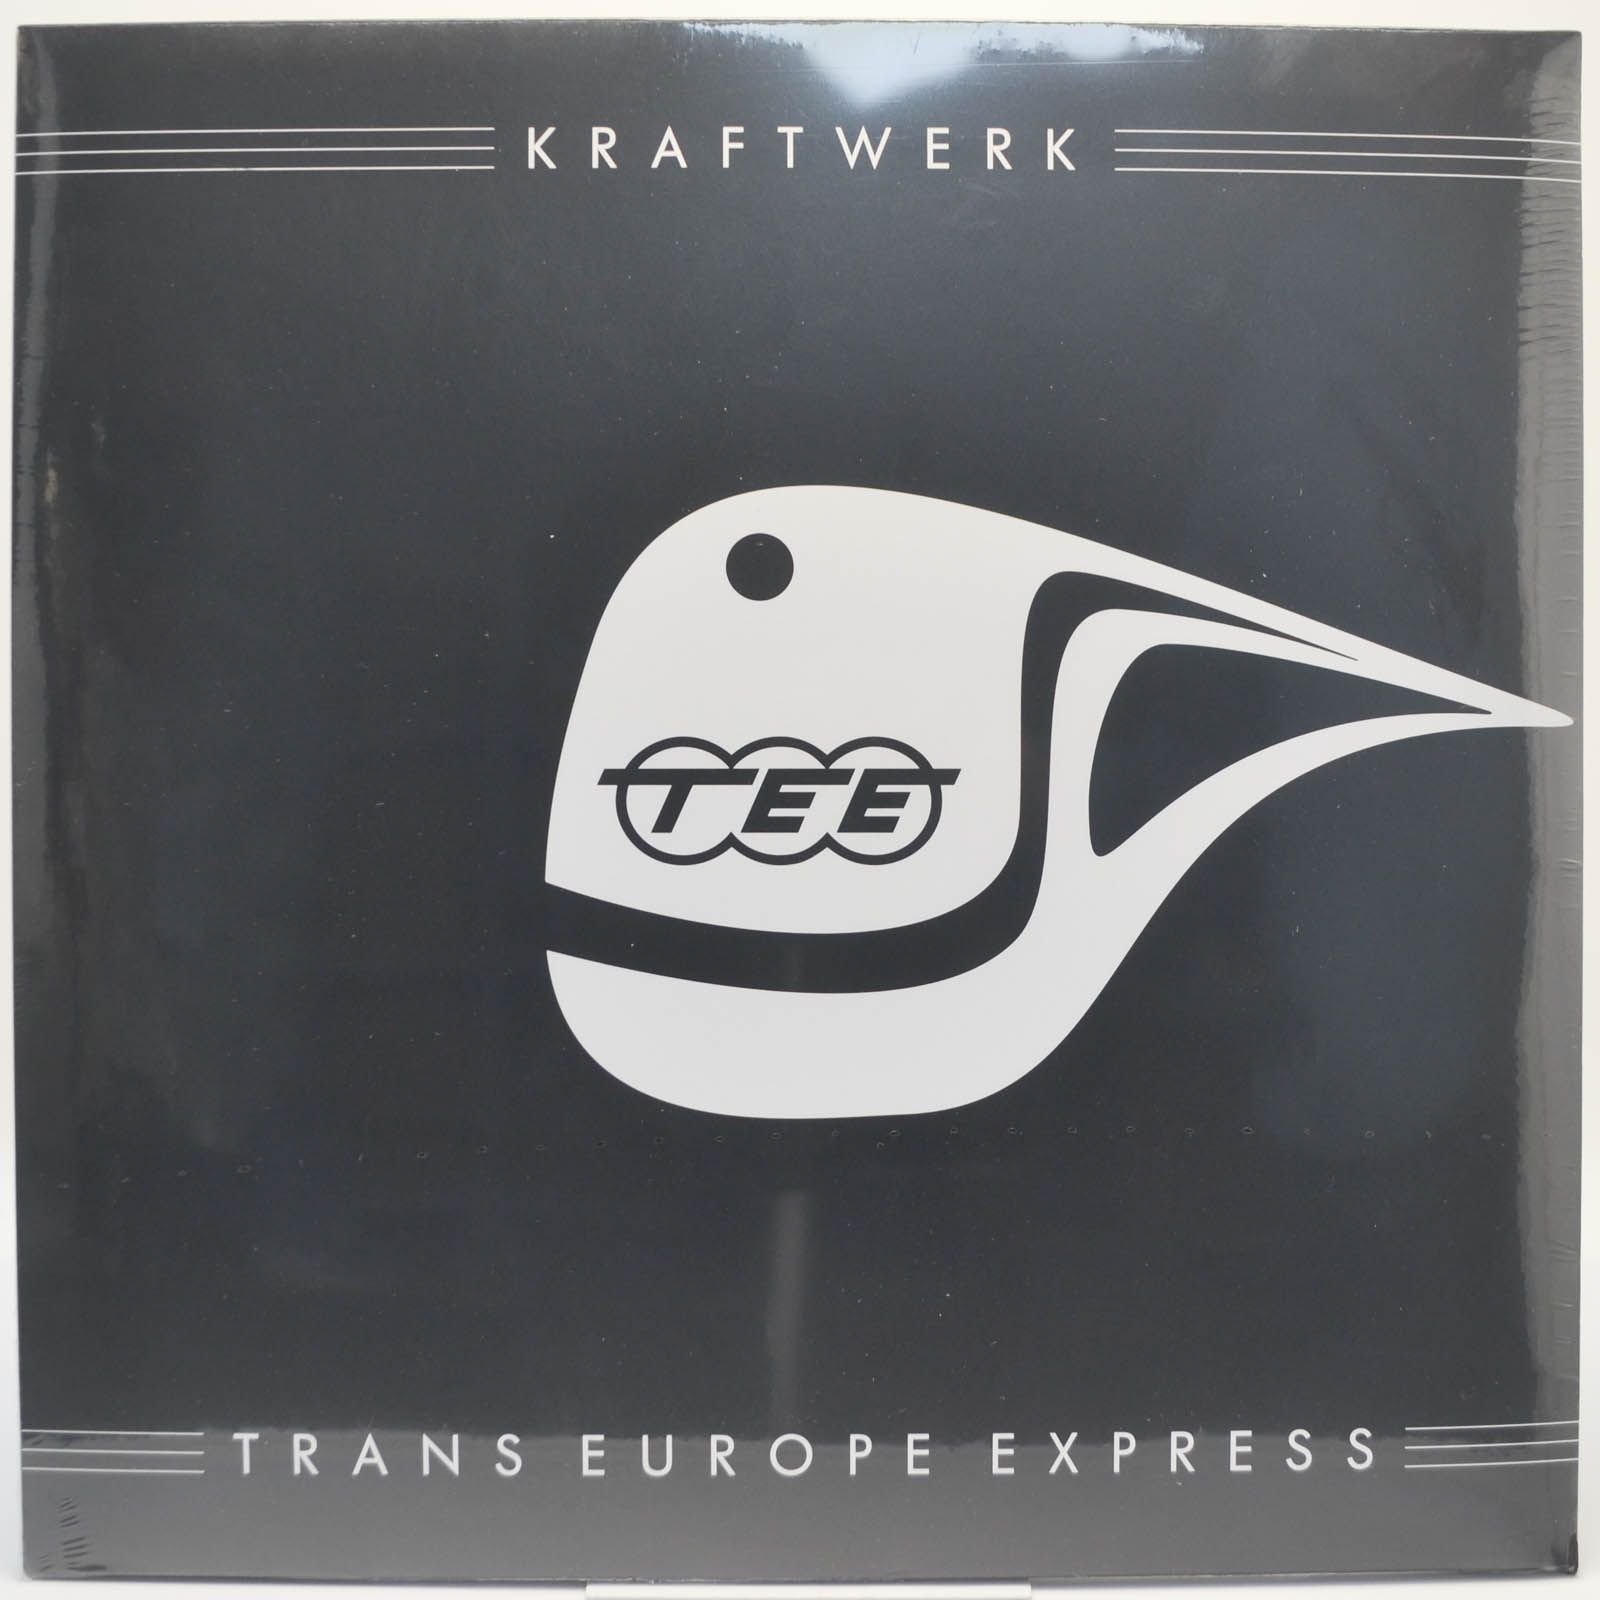 Kraftwerk — Trans Europe Express, 1977